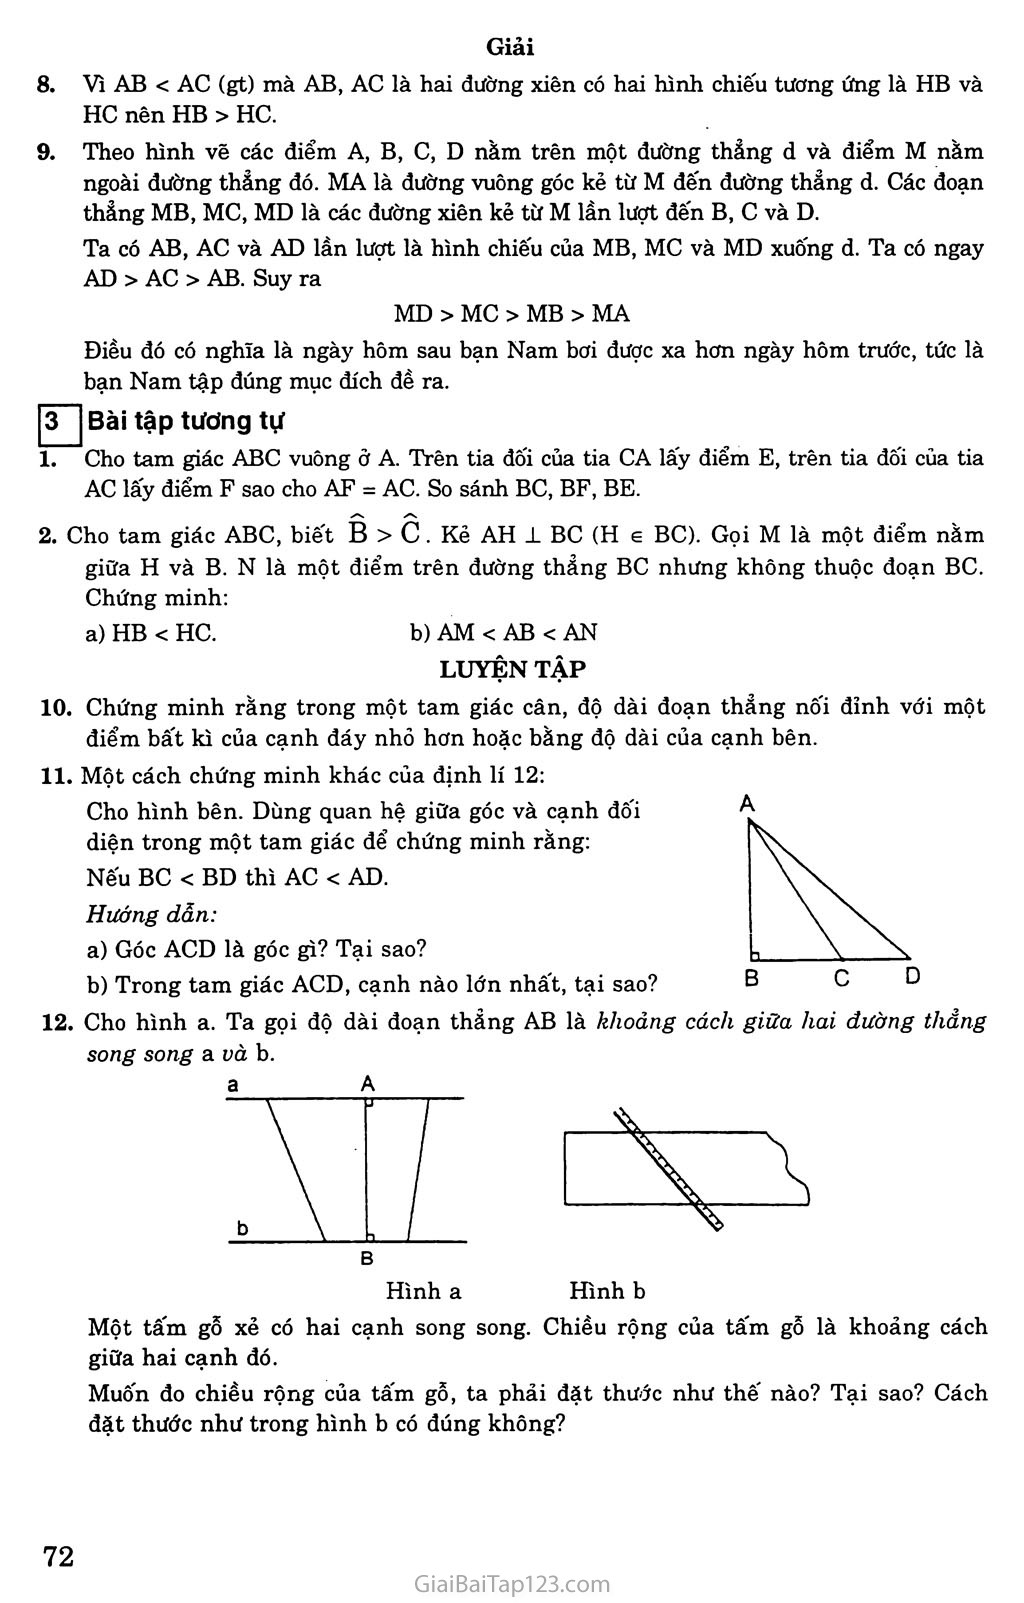 Bài 2. Quan hệ giữa đường vuông góc và đường xiên, đường xiên và hình chiếu trang 3